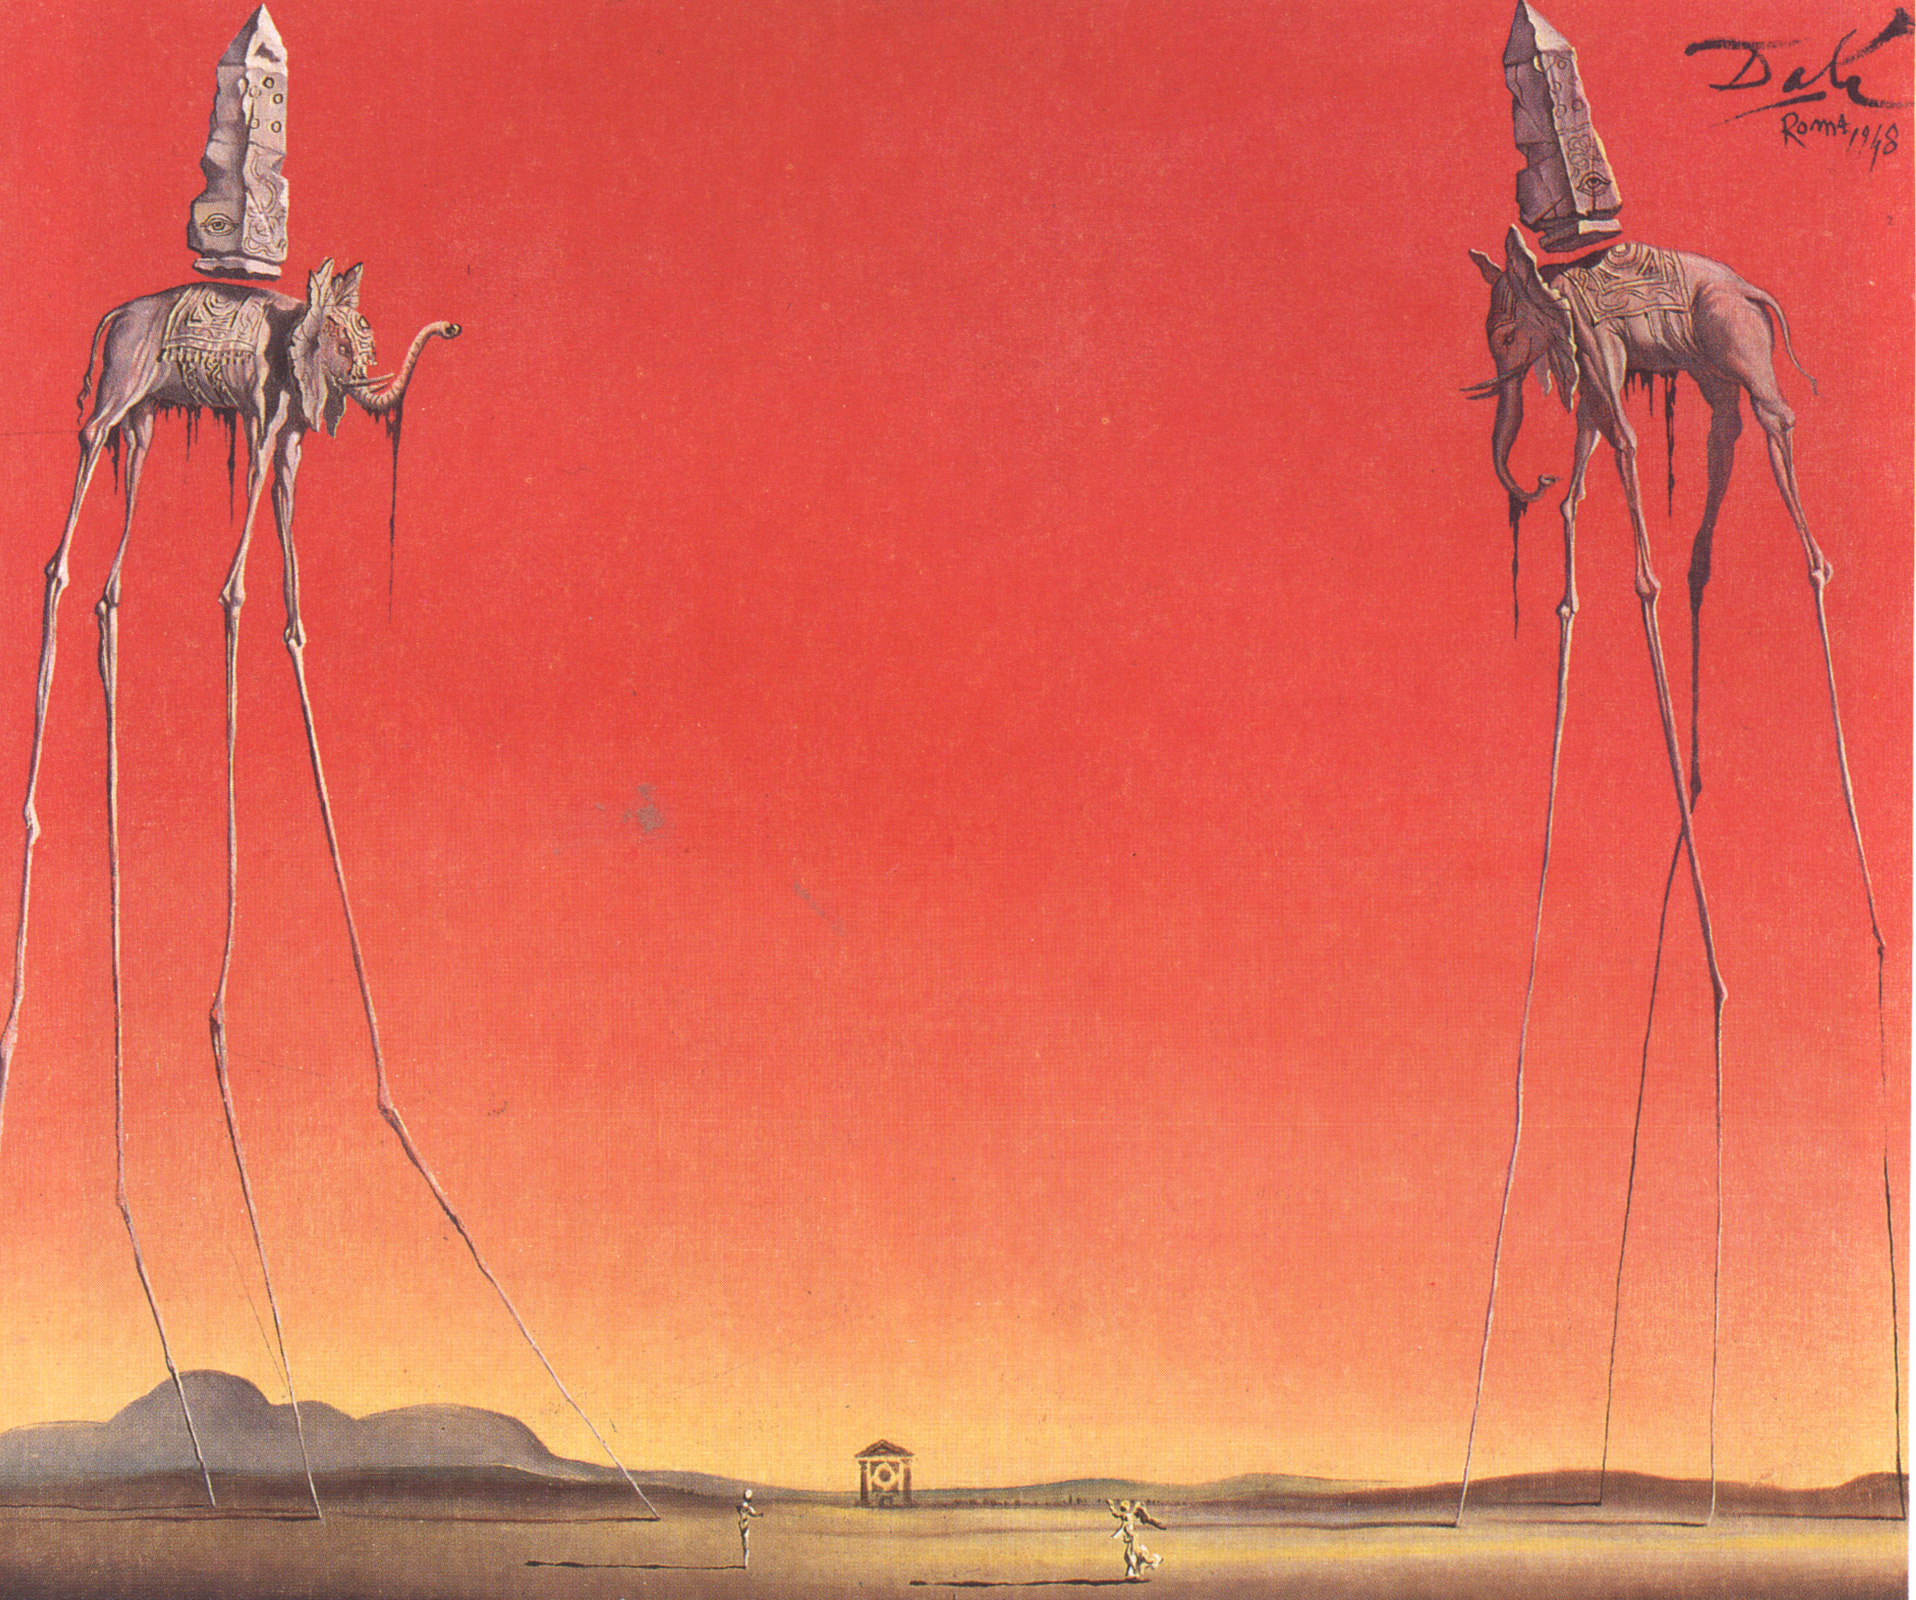 Les éléphants by Salvador Dalí - 1948 collection privée